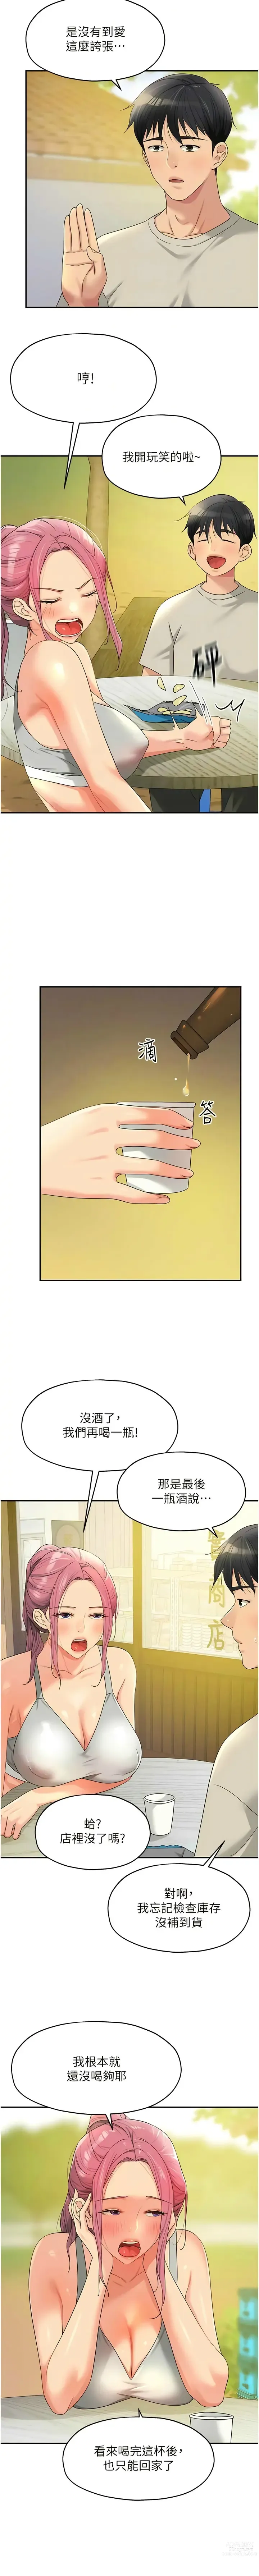 Page 917 of manga 洞洞杂货铺/Glory Hole Shop 1-71